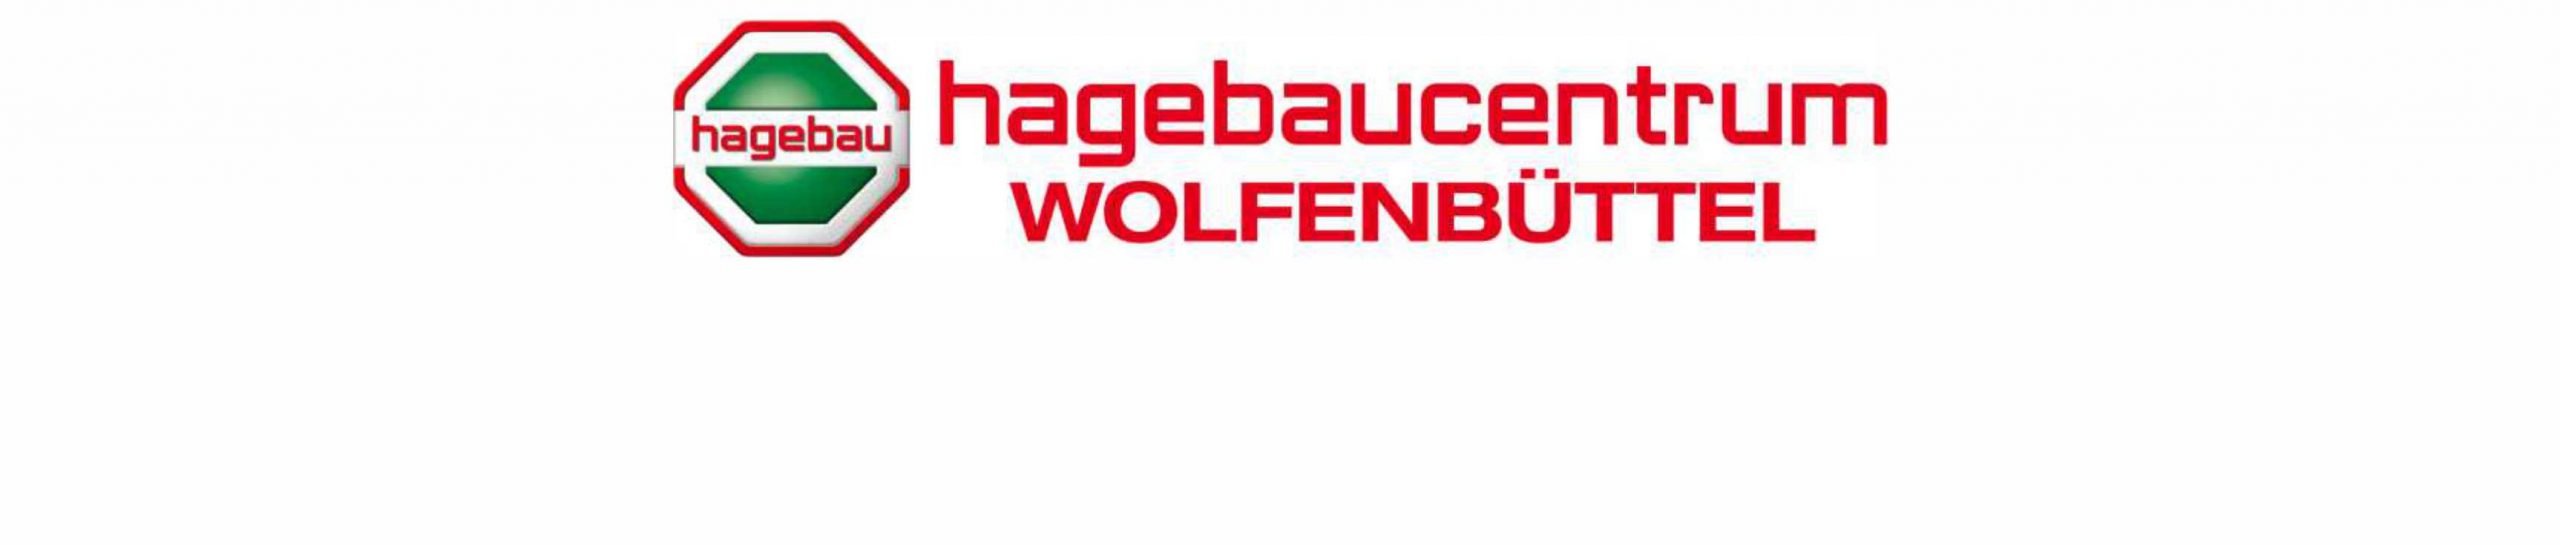 hagebaucentrum Wolfenbüttel GmbH